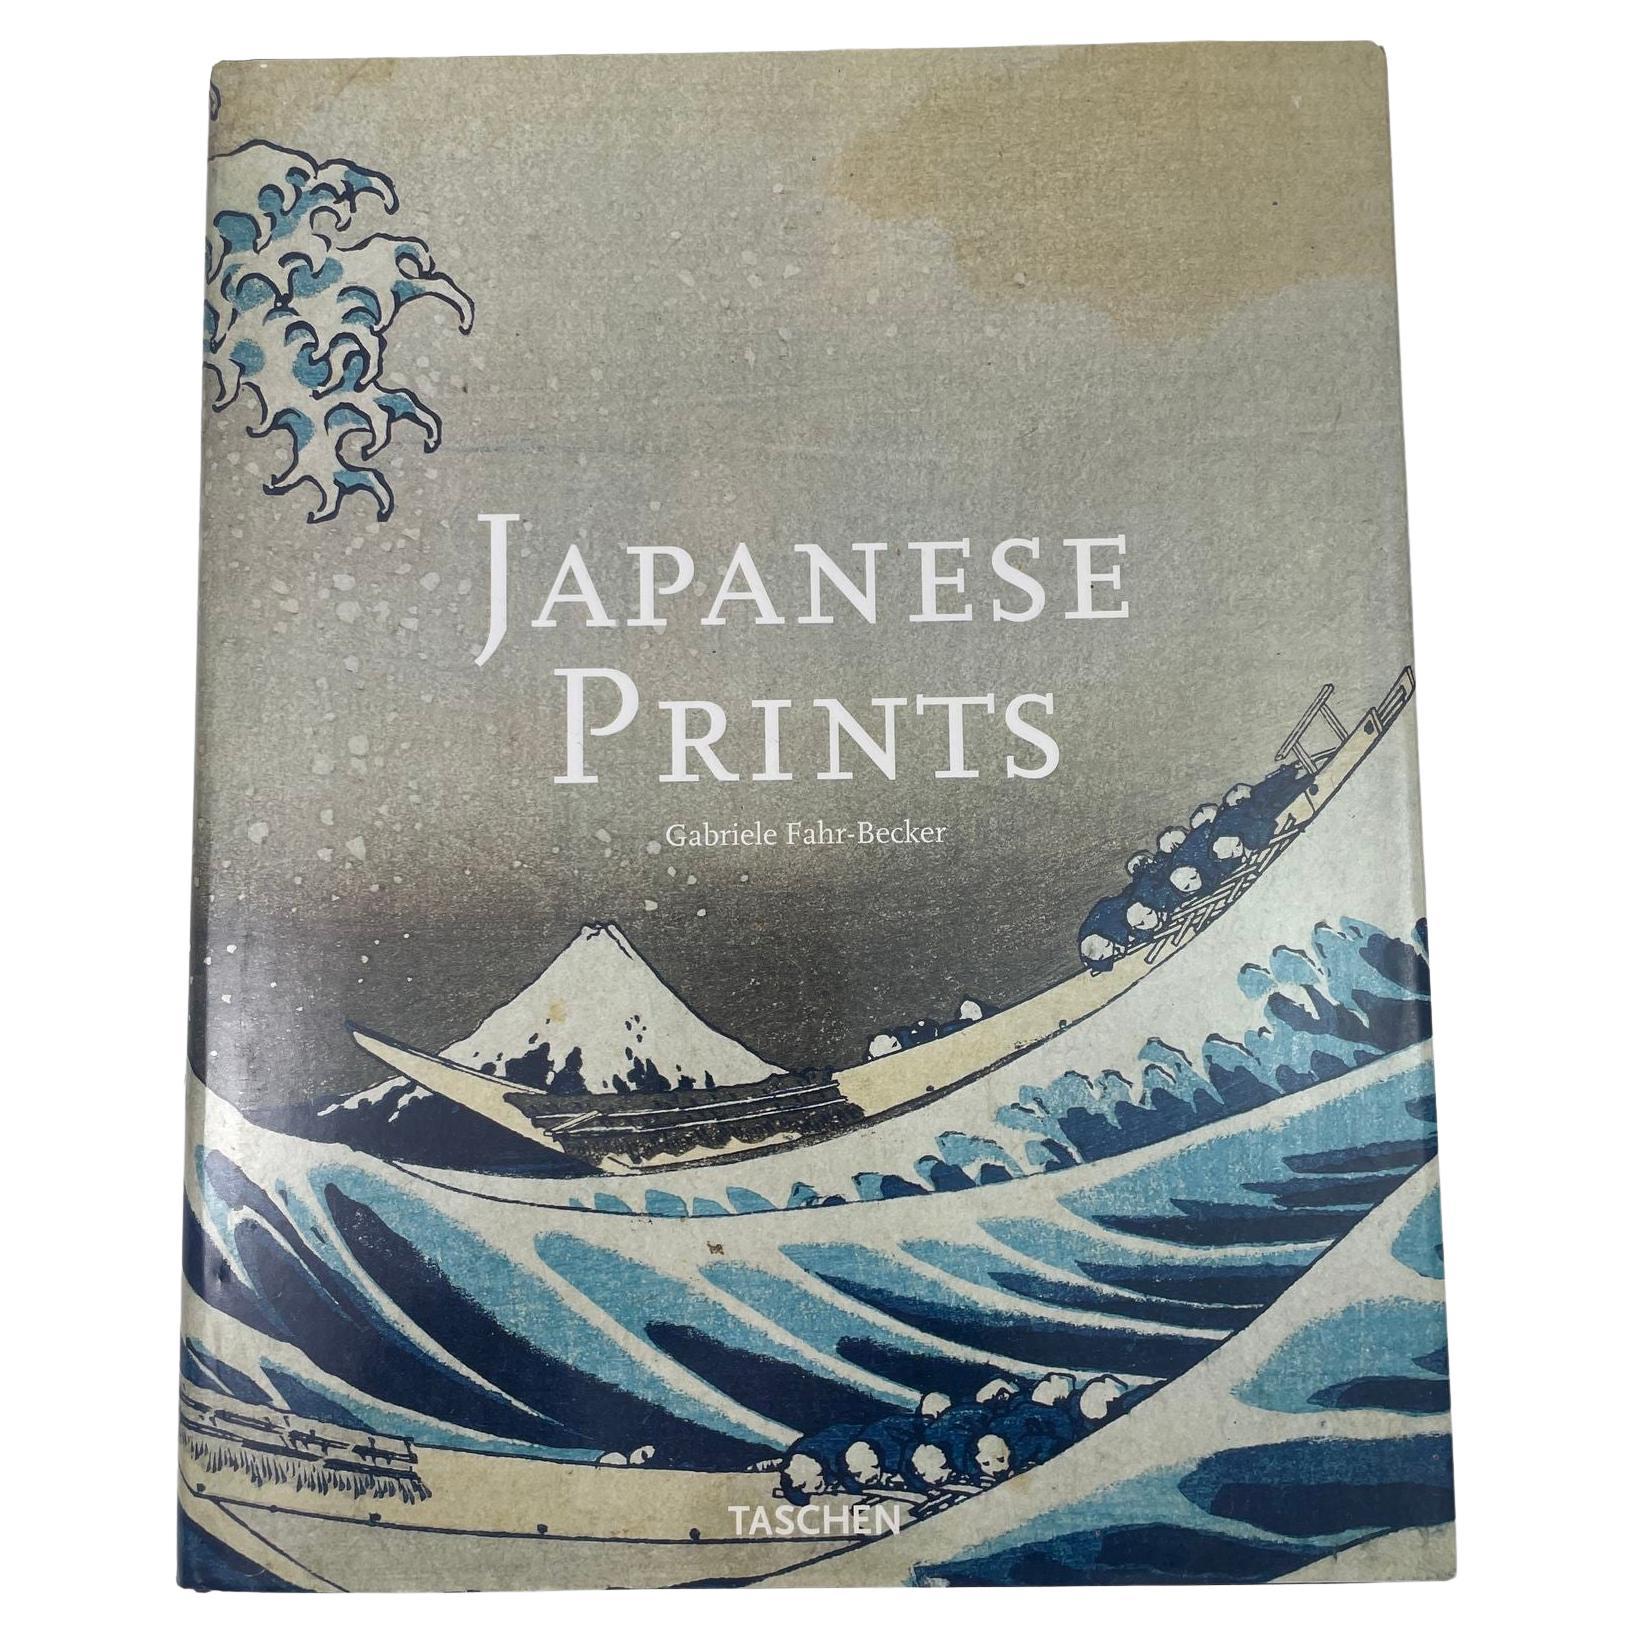 Japanese Prints by Gabriele Fahr-Becker Taschen 1999